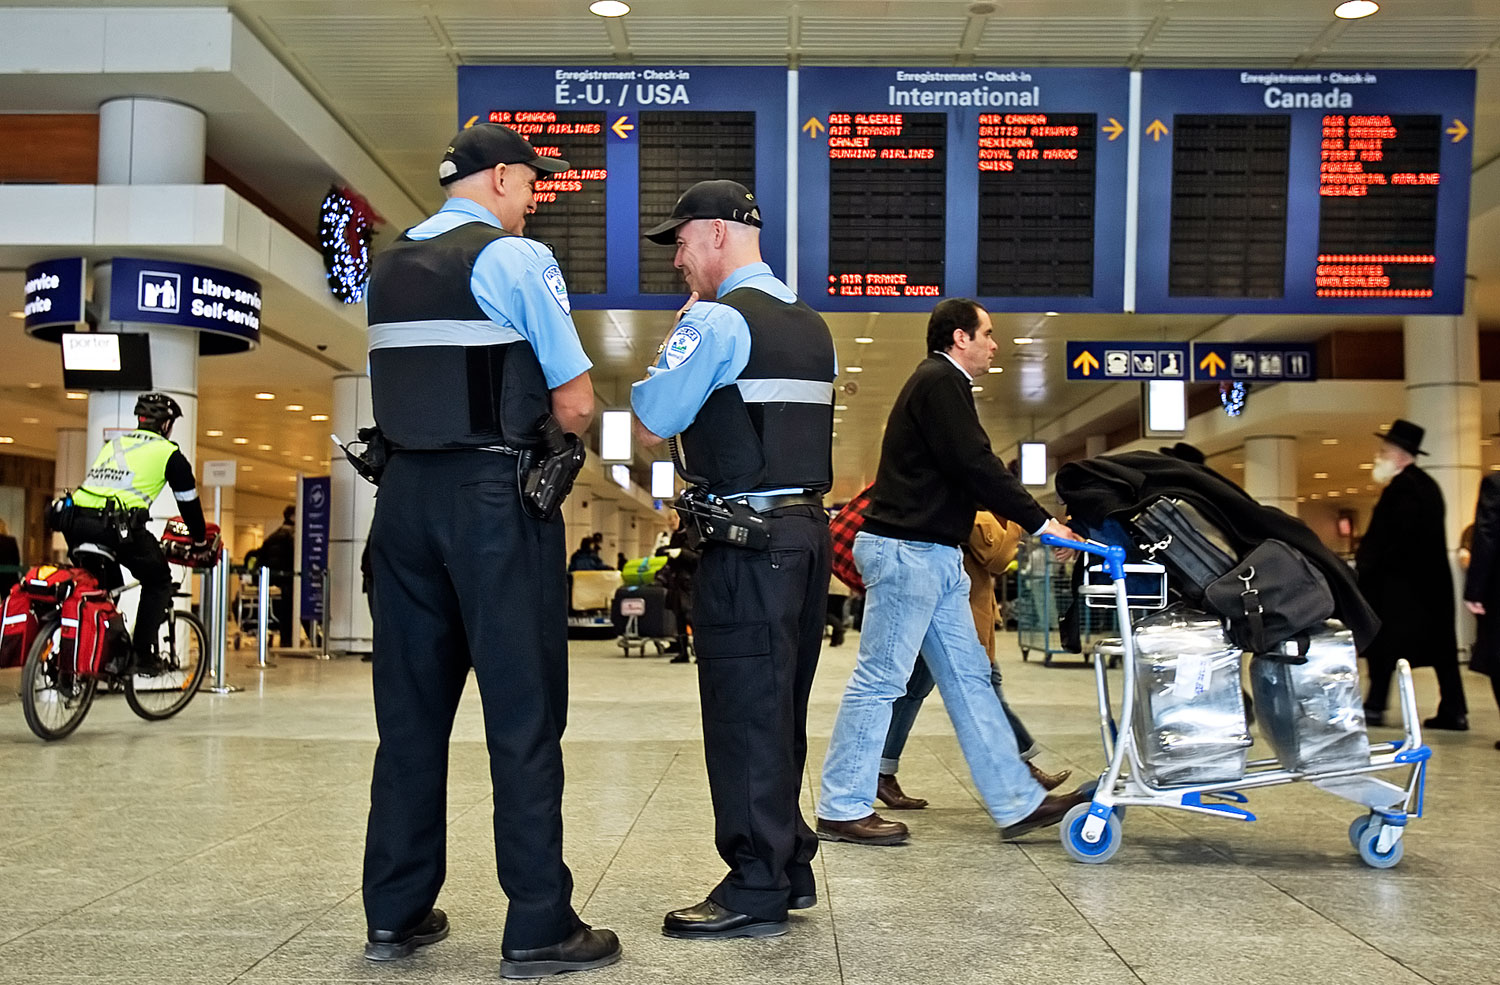 A kanadai repterekről is visszafordíthatják a beutazót